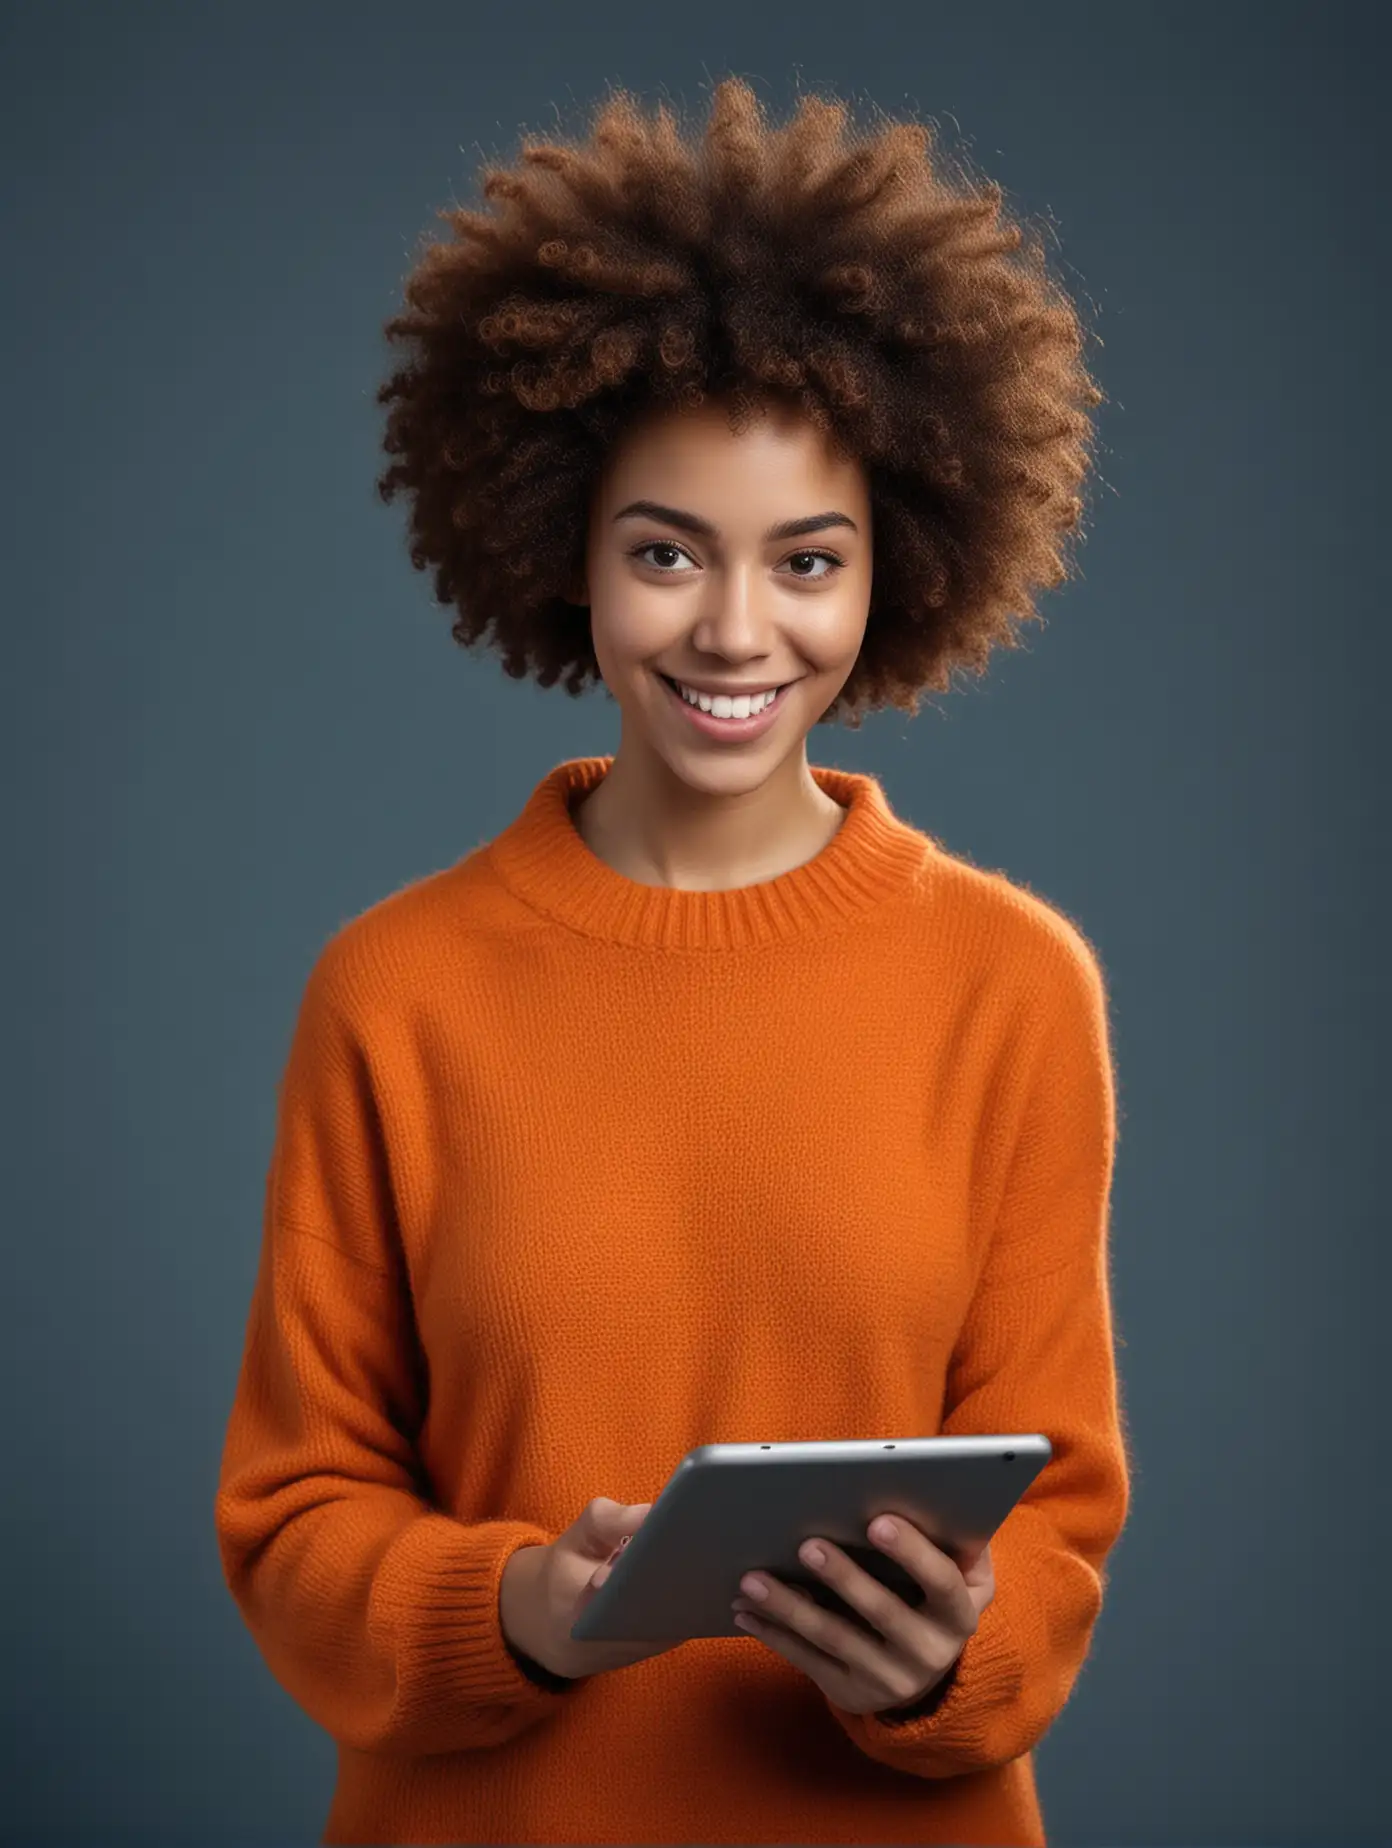 mujer super realista joven leyendo en una tablet, y sonriendo cabello afro usando un buso manga larga de color naranja, fotografia profesional en estudio con fondo azul oscuro